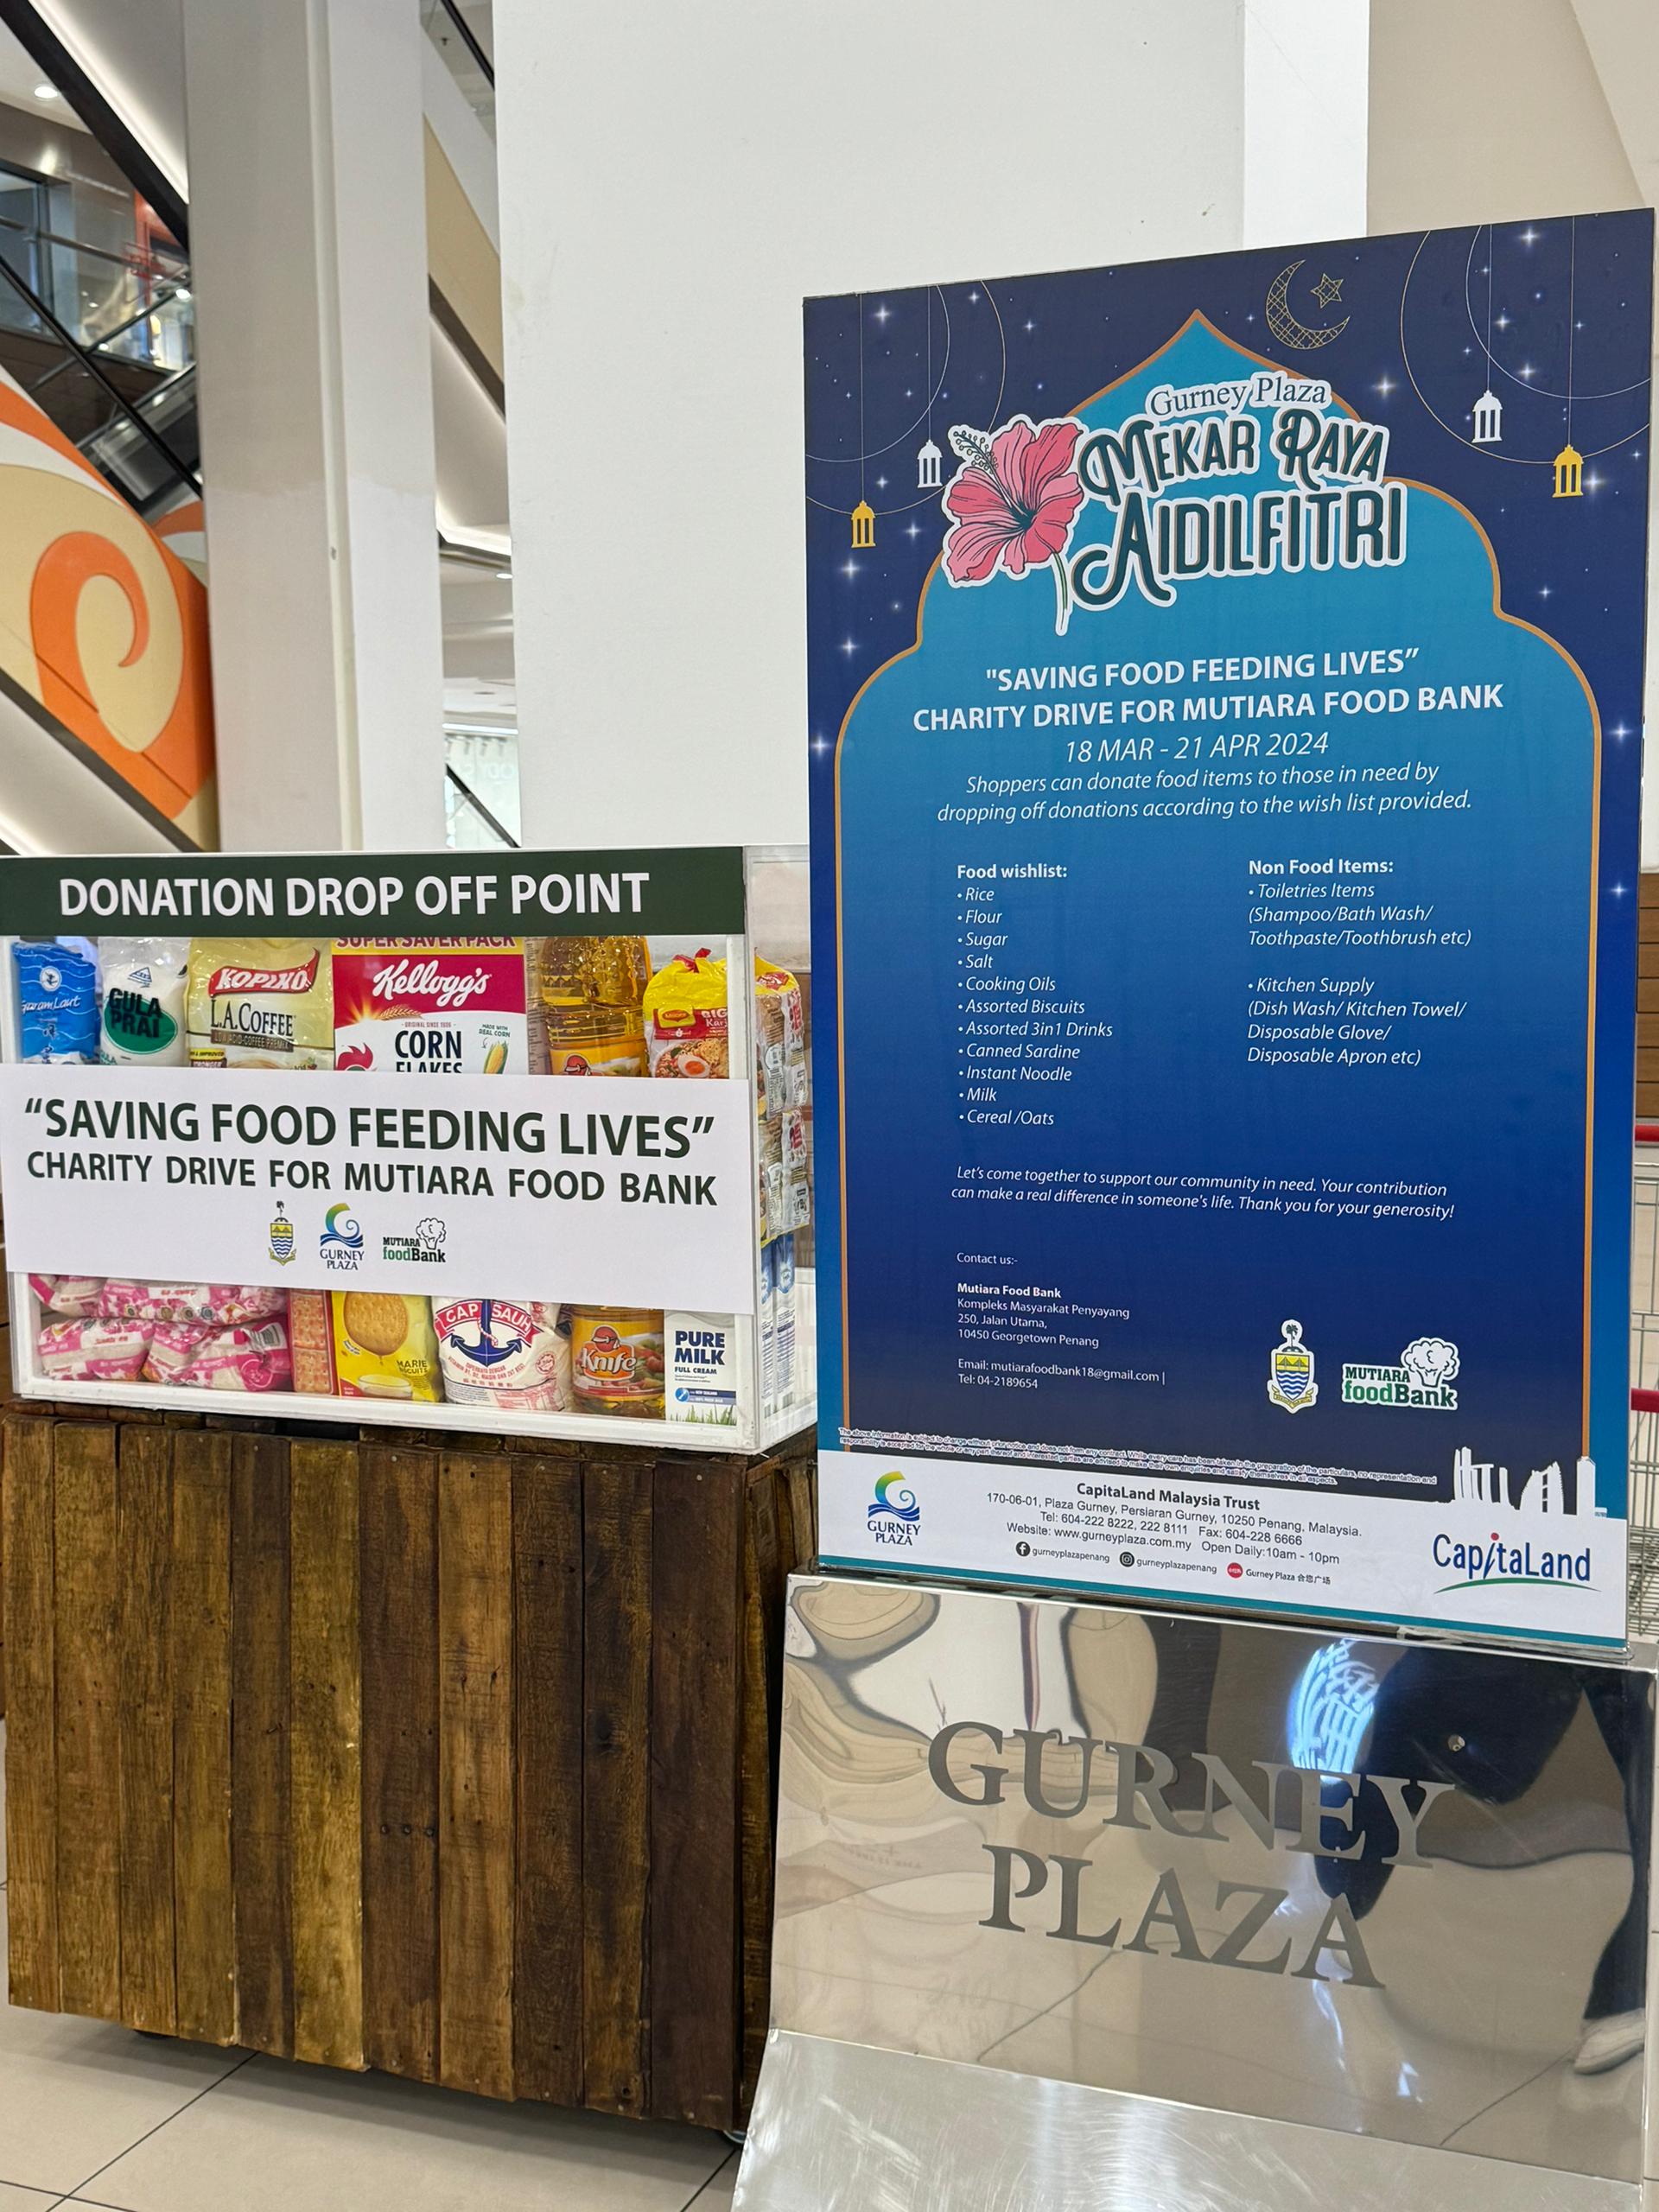 捐贈者可根據廣場咨詢台所提供的許願清單海報，選擇想要捐獻食物行善。